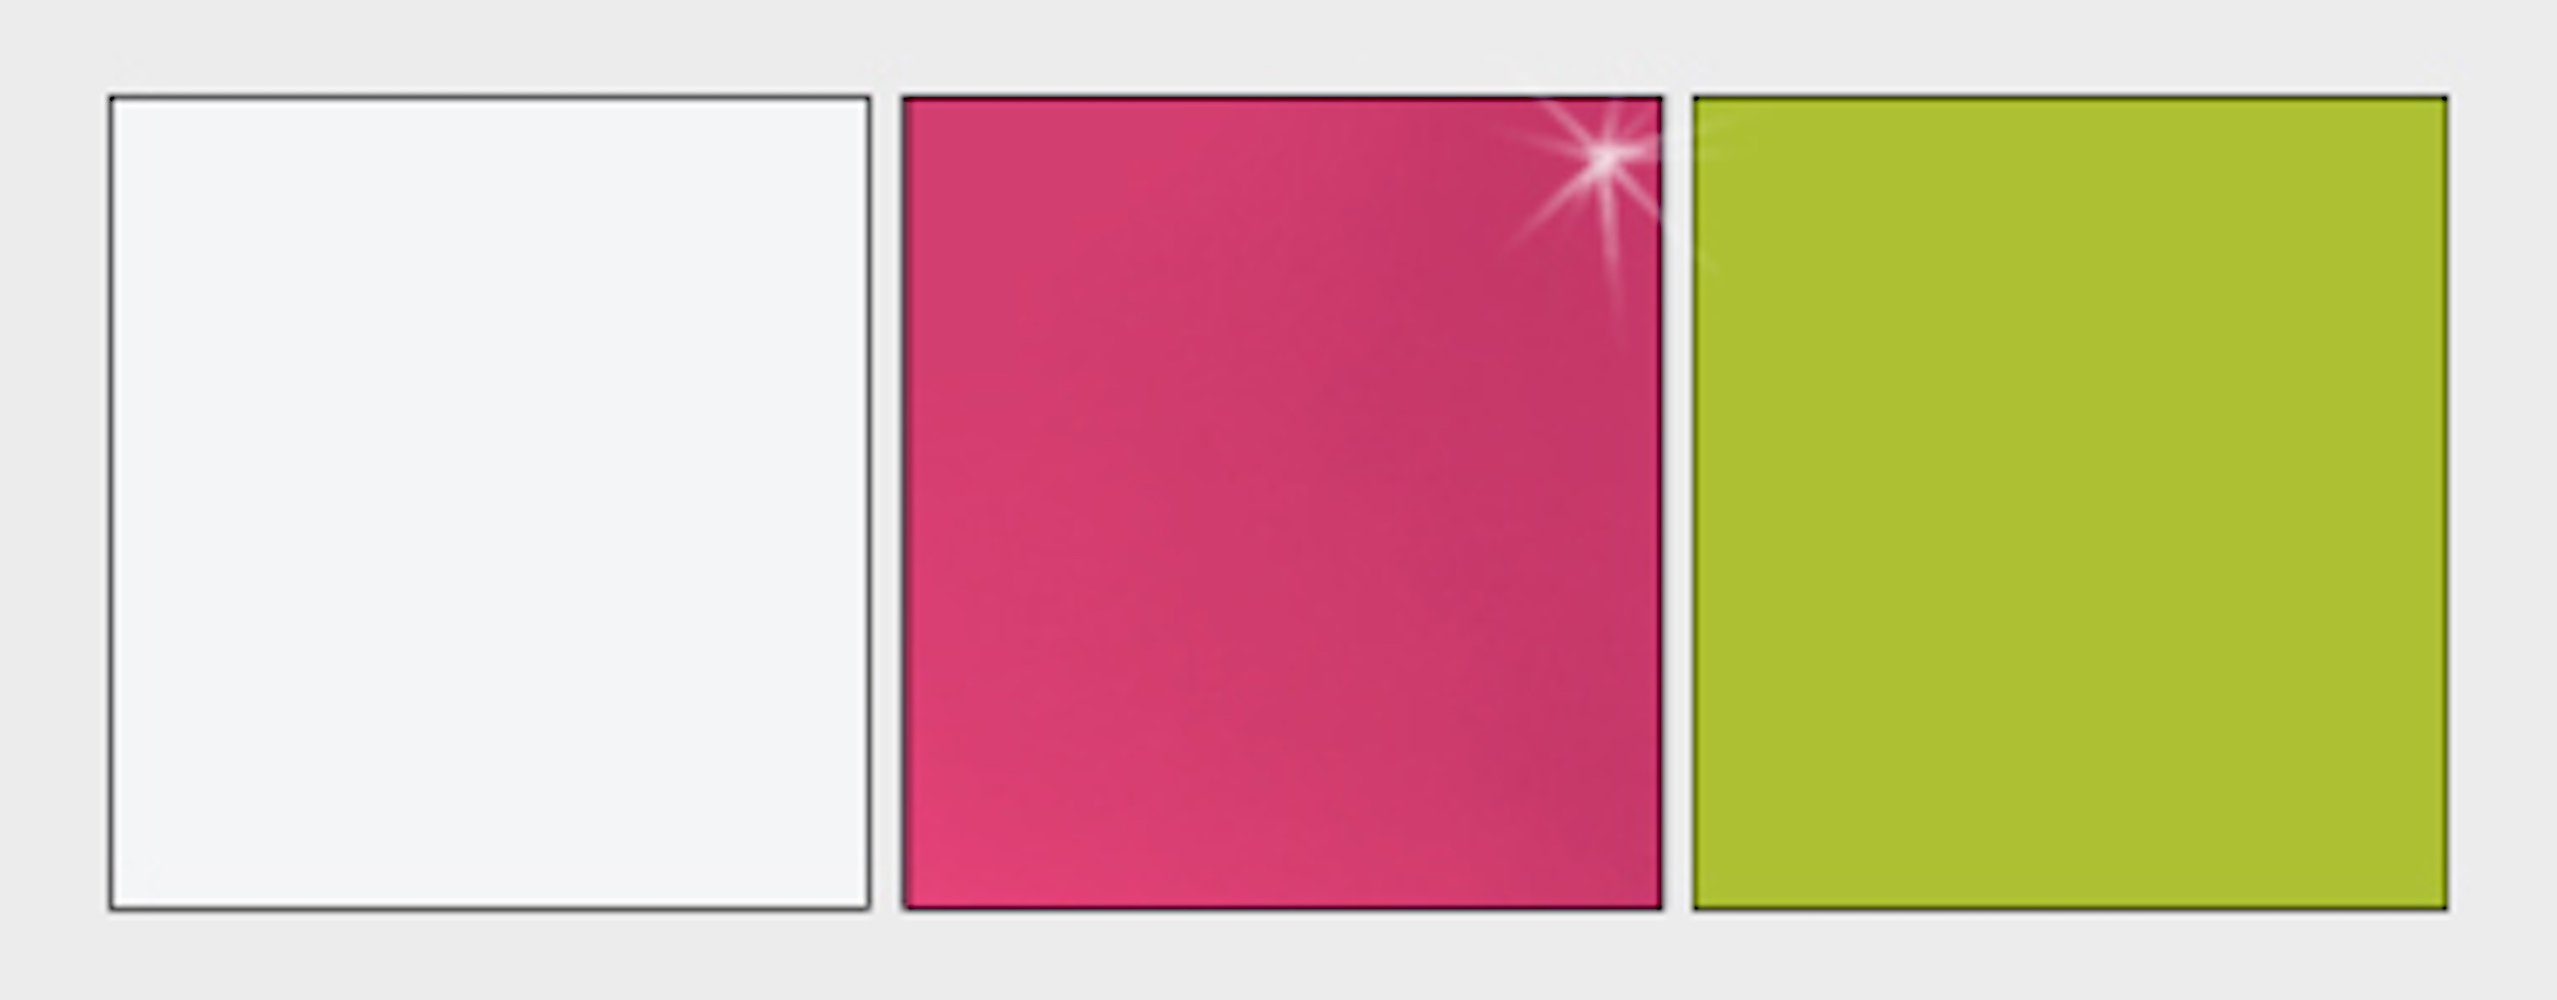 Feldmann-Wohnen Eckschrank Guliver (Guliver) weiß wählbar Griffe Farbe rosa & glänzend Schubkasten 1 87cm Korpus Frontfarbe der